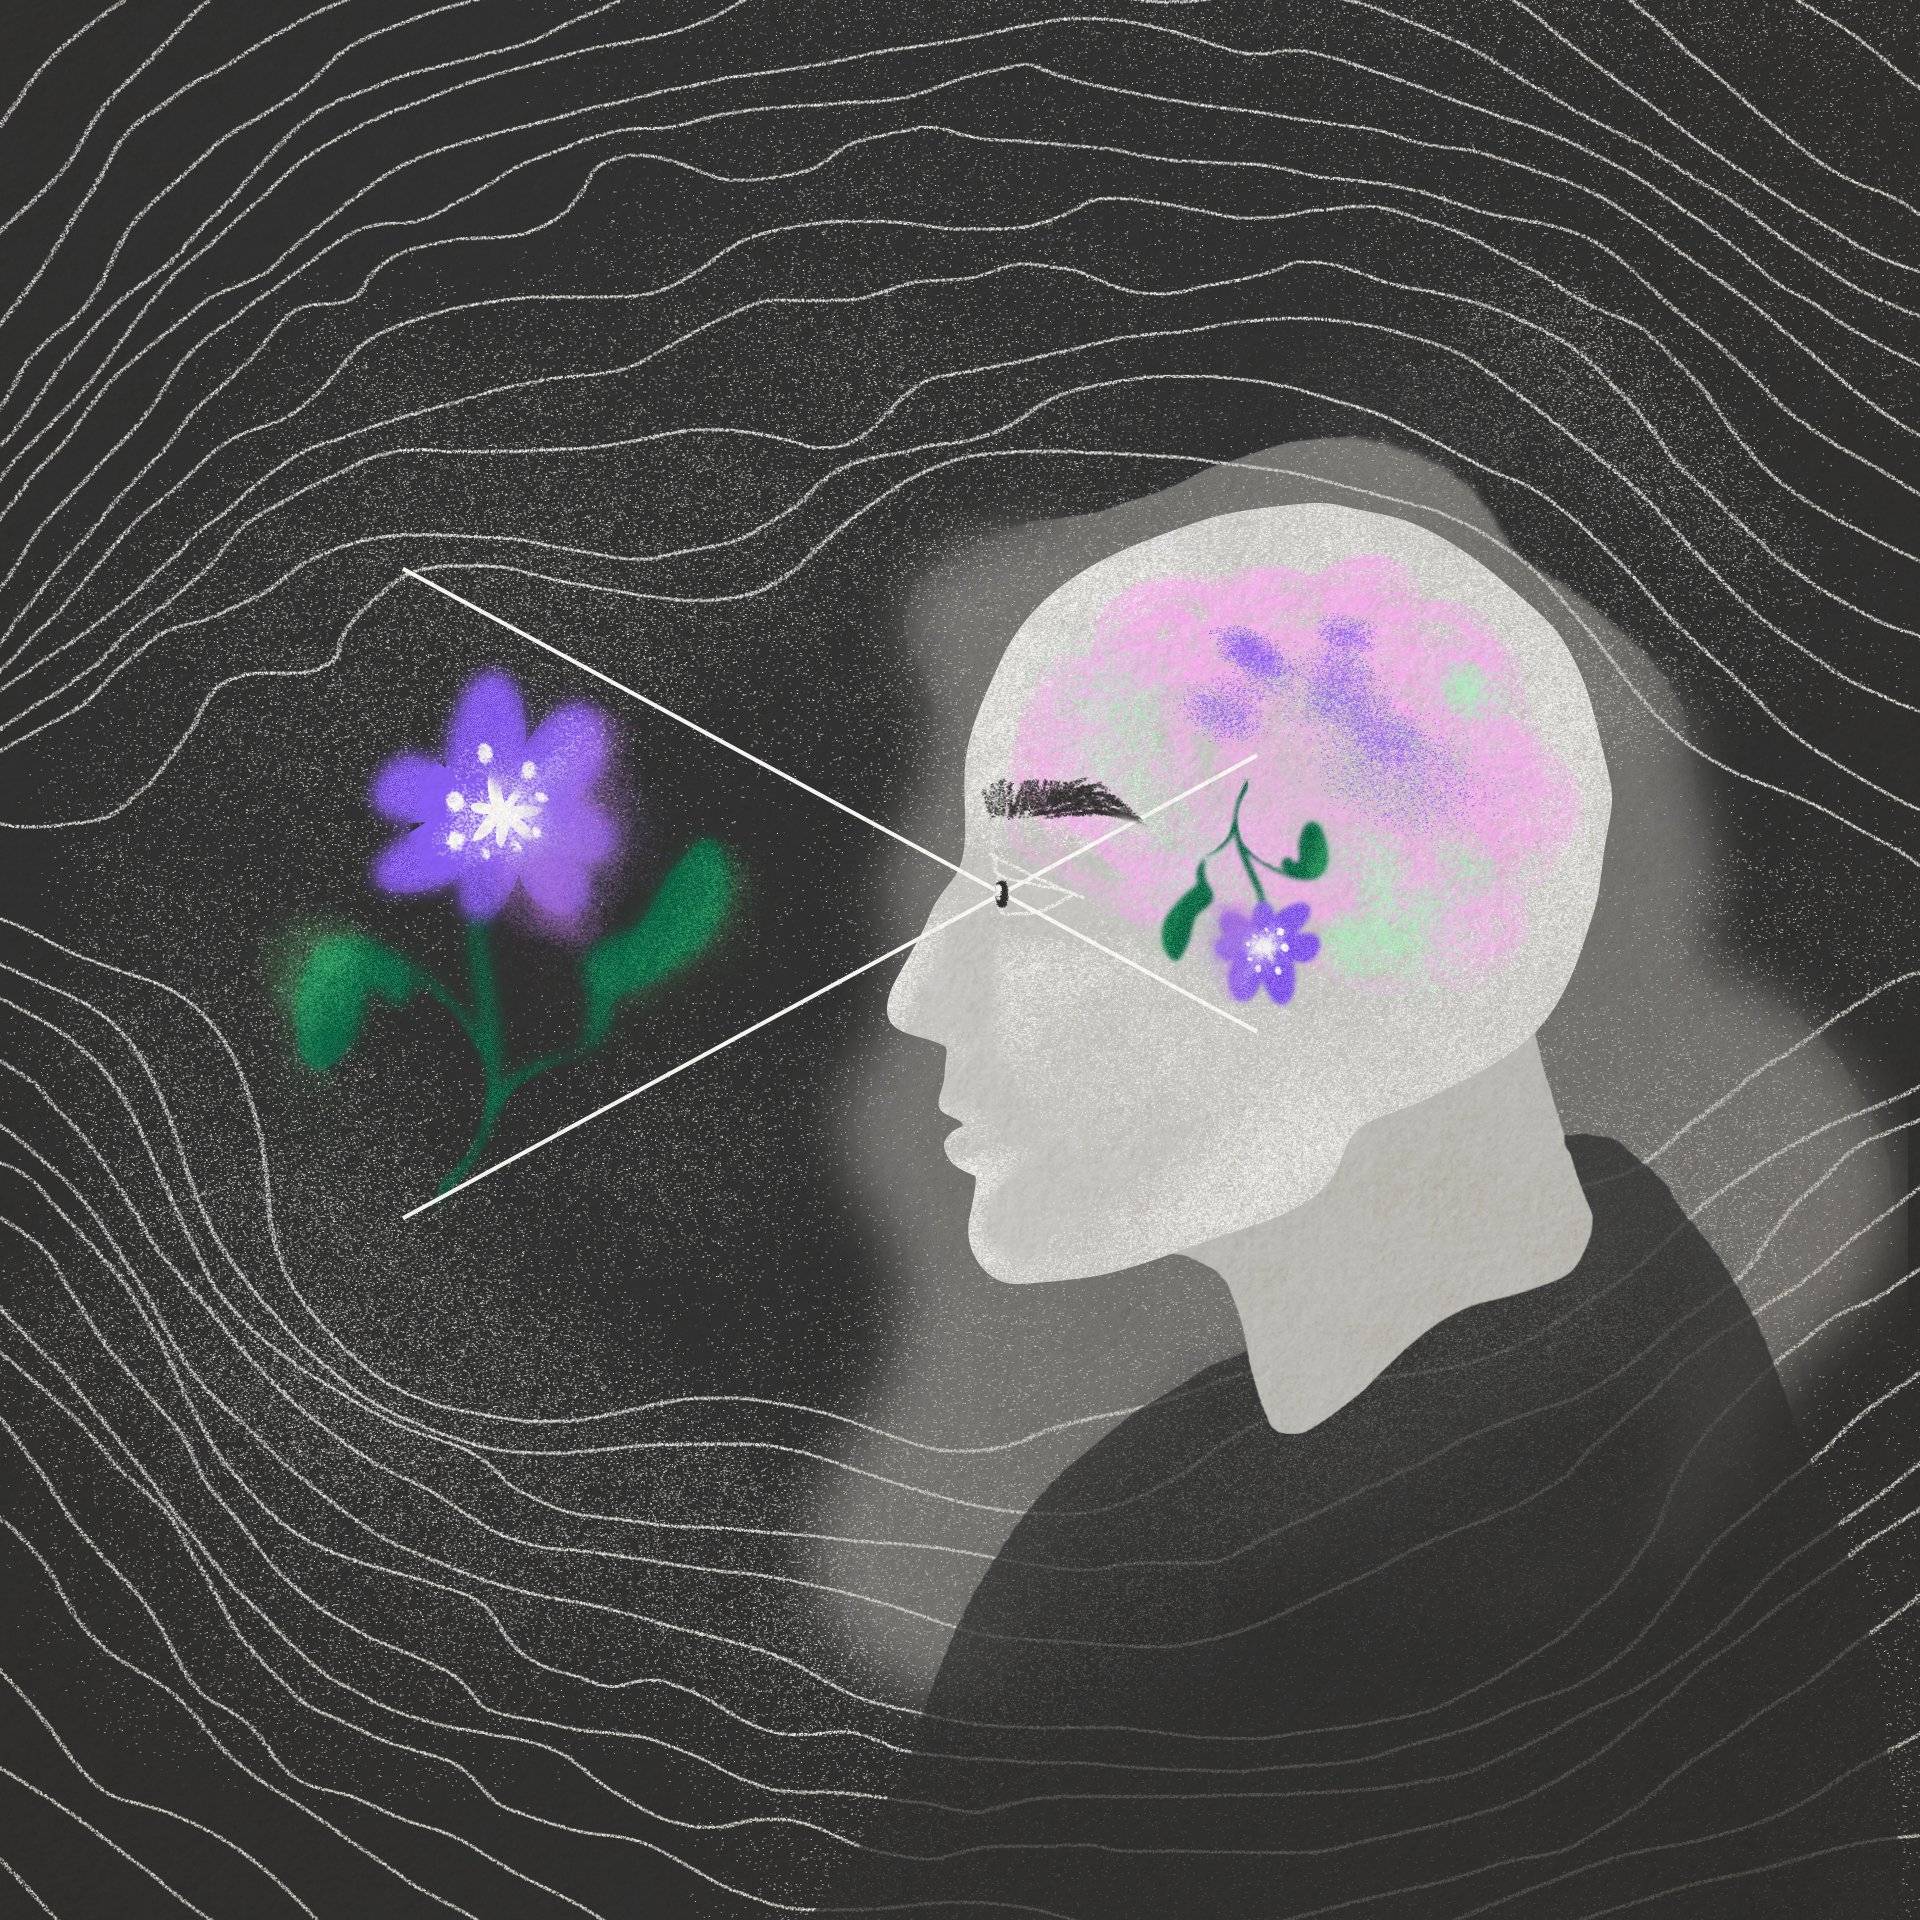 Rysunek - profil głowy człowieka z naszkicowanym różowym mózgiem i promieniami wychodzącymi z oka